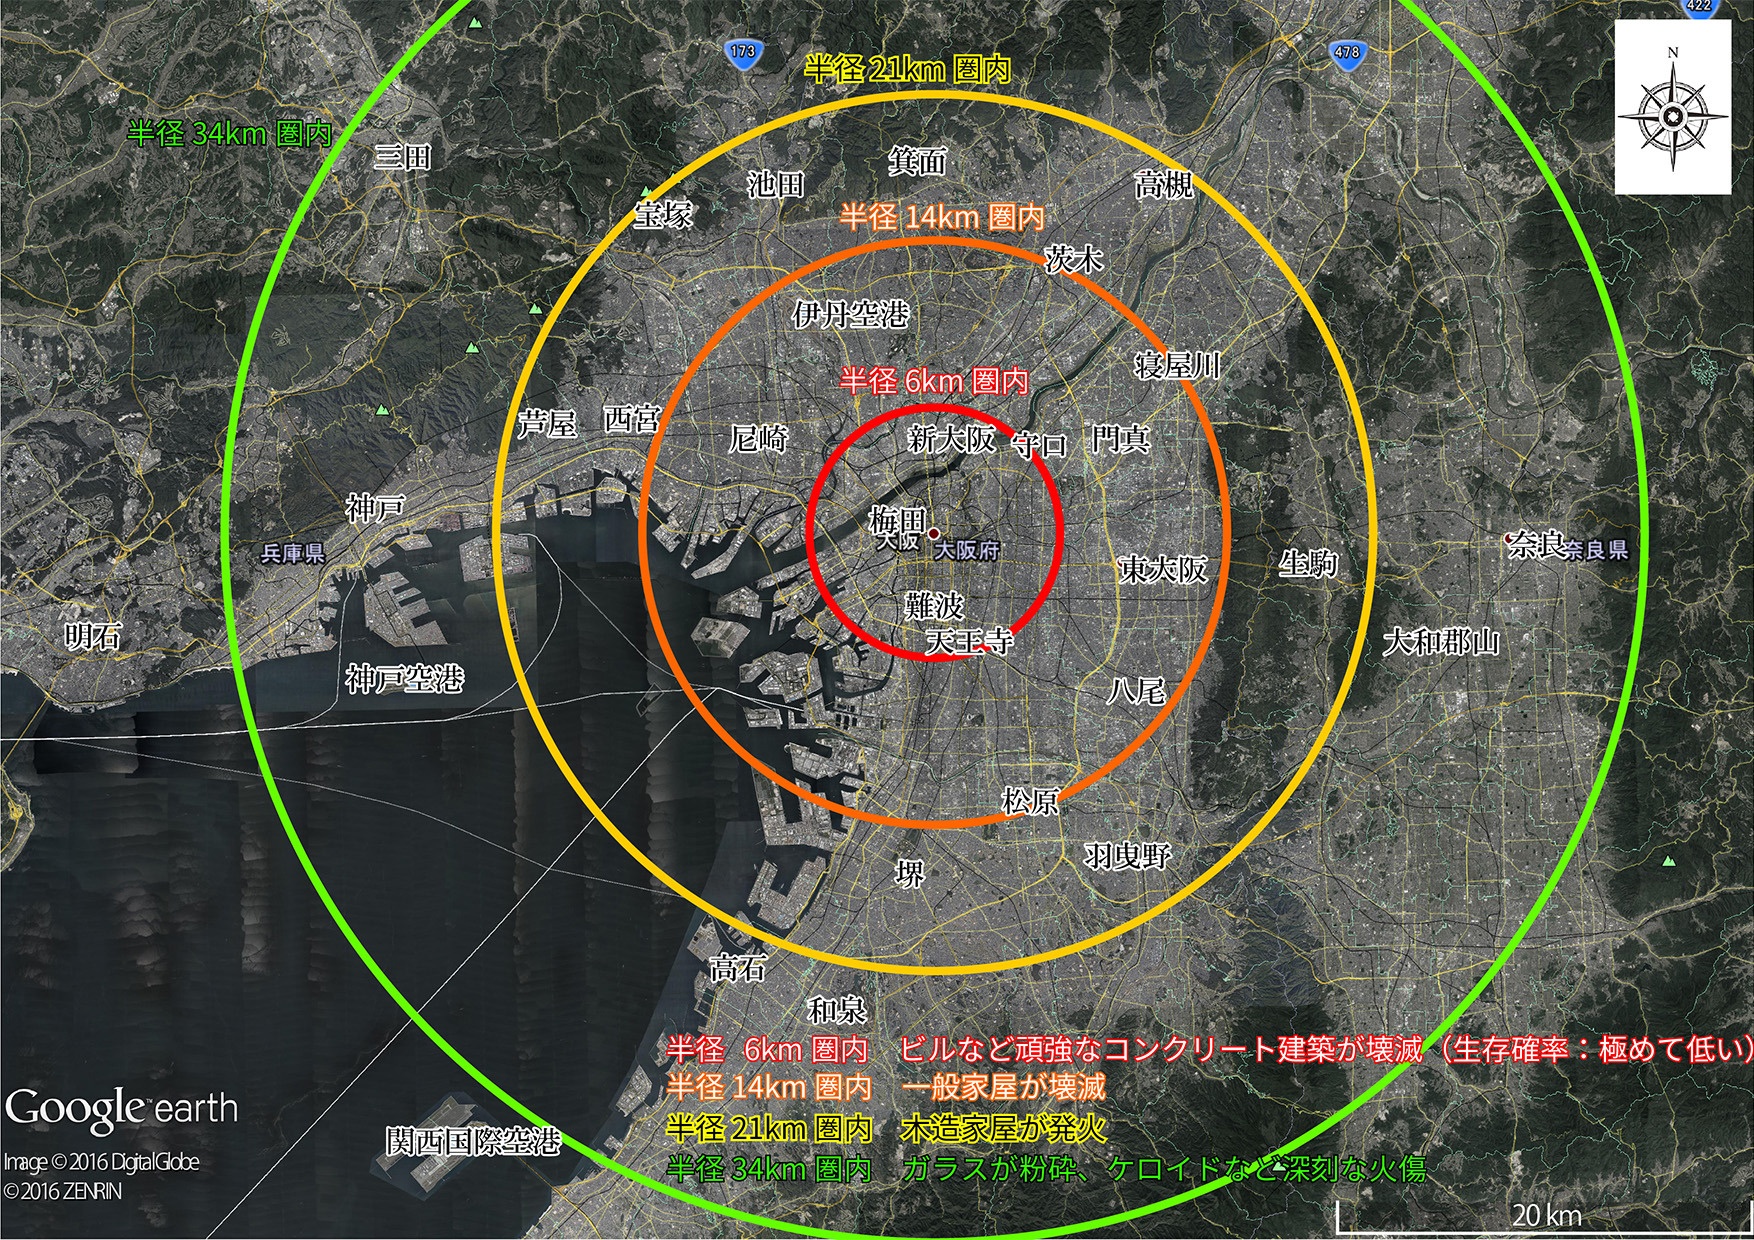 東京 核 爆弾 被害 範囲